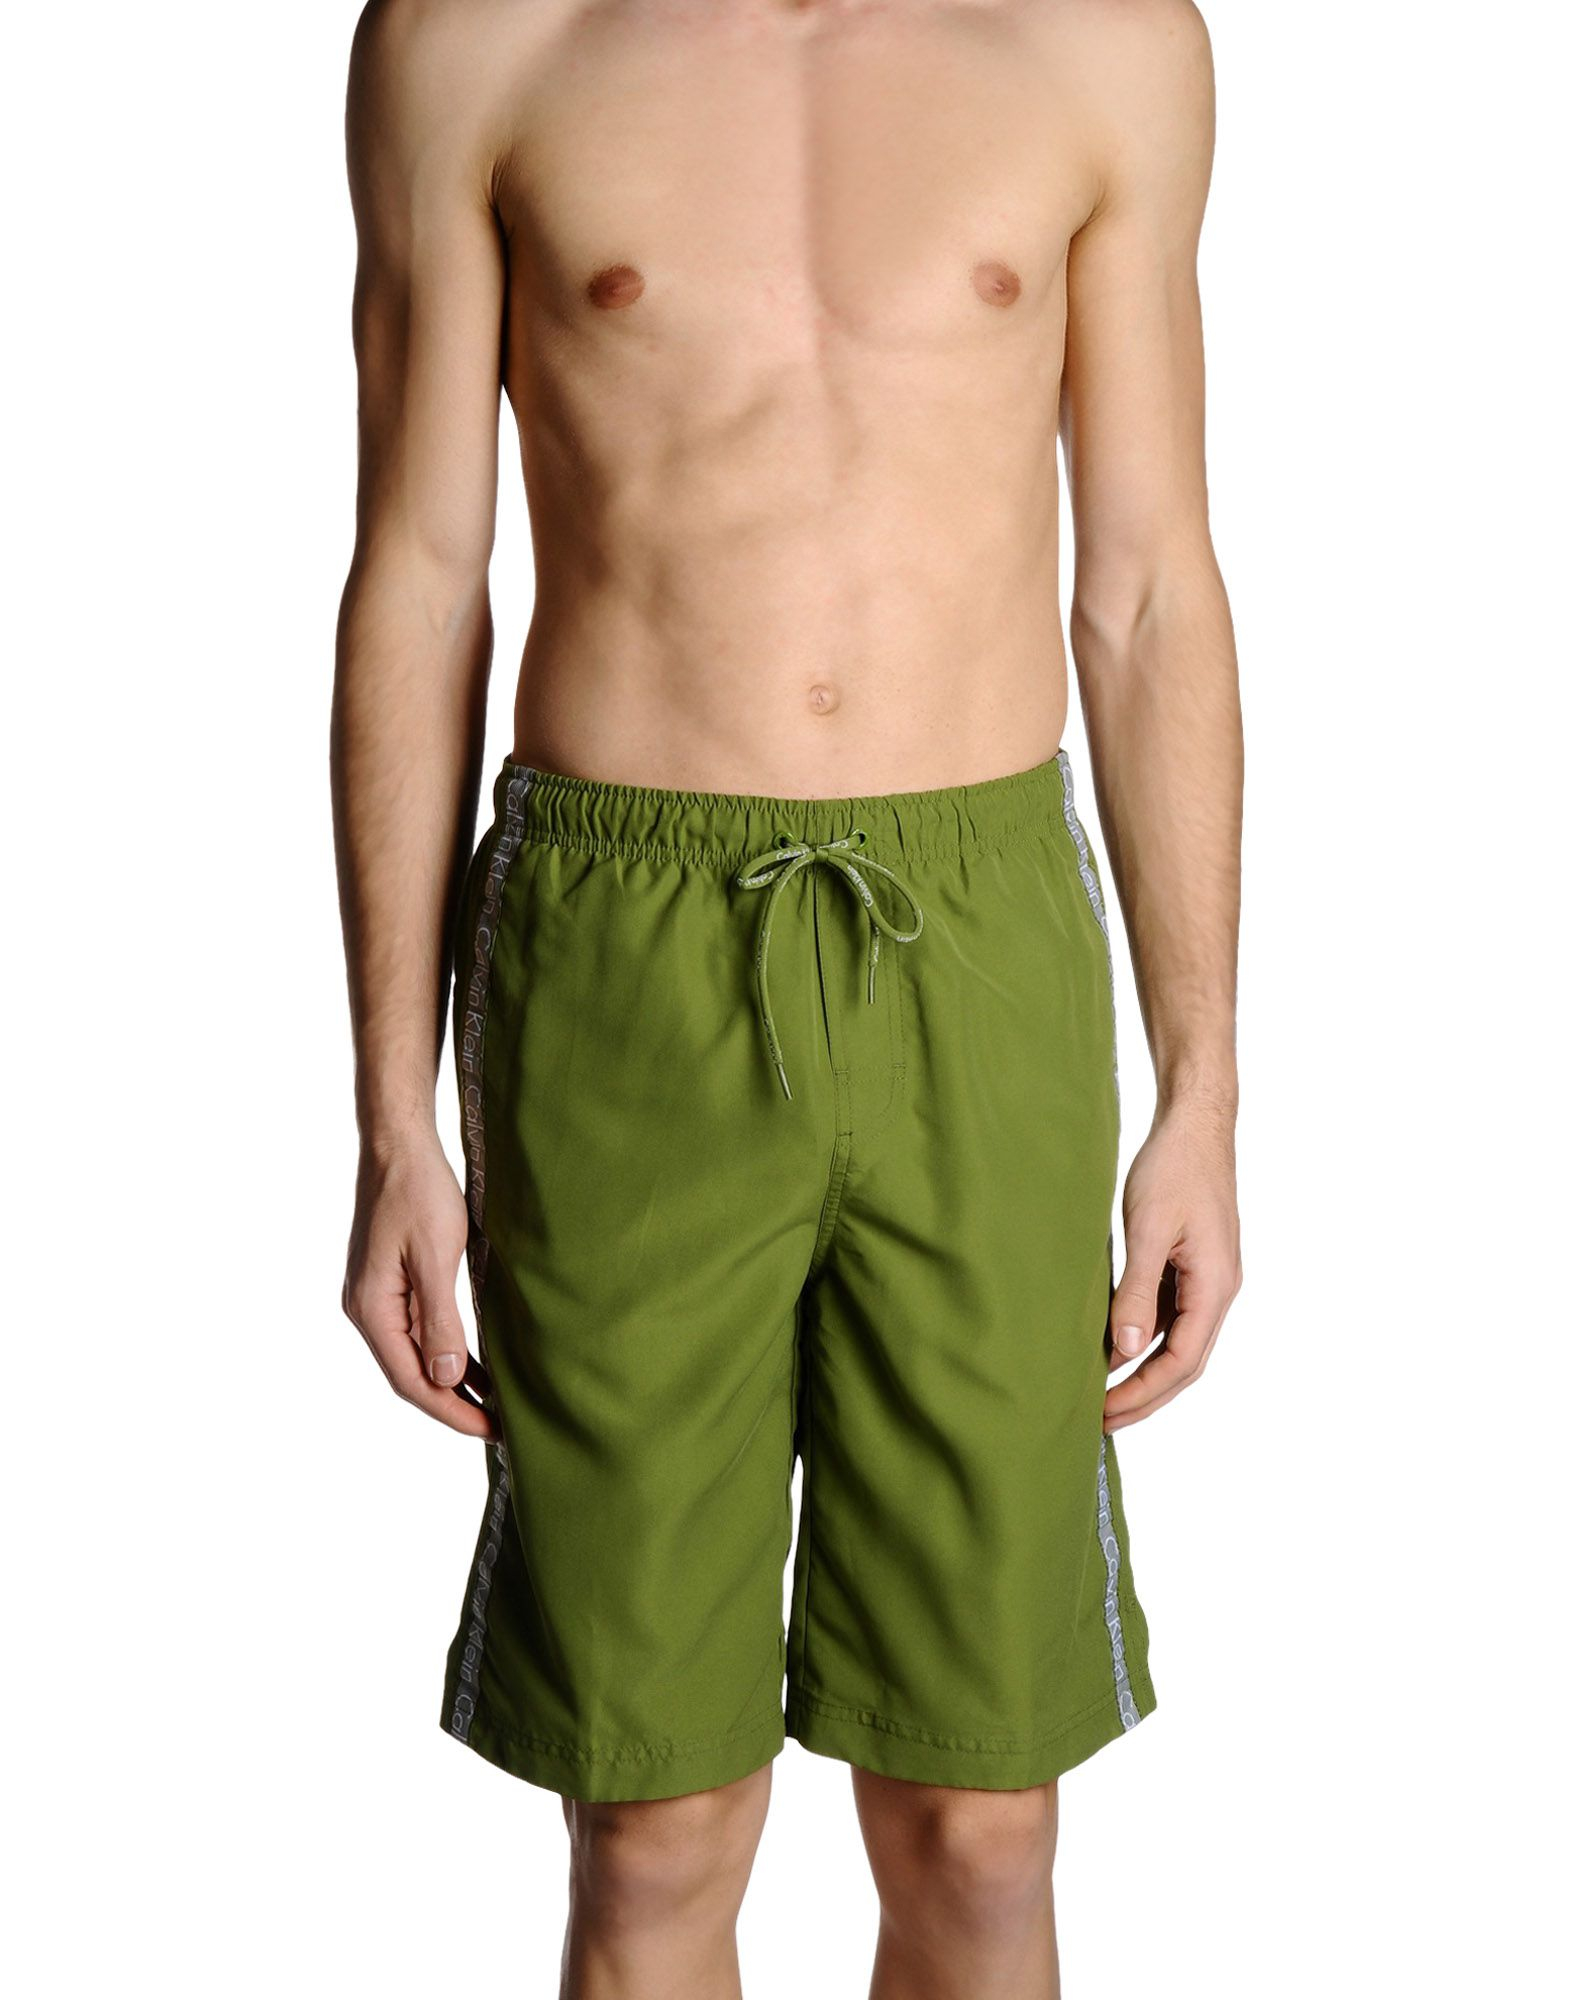 Lyst - Calvin Klein Swim Trunks in Green for Men